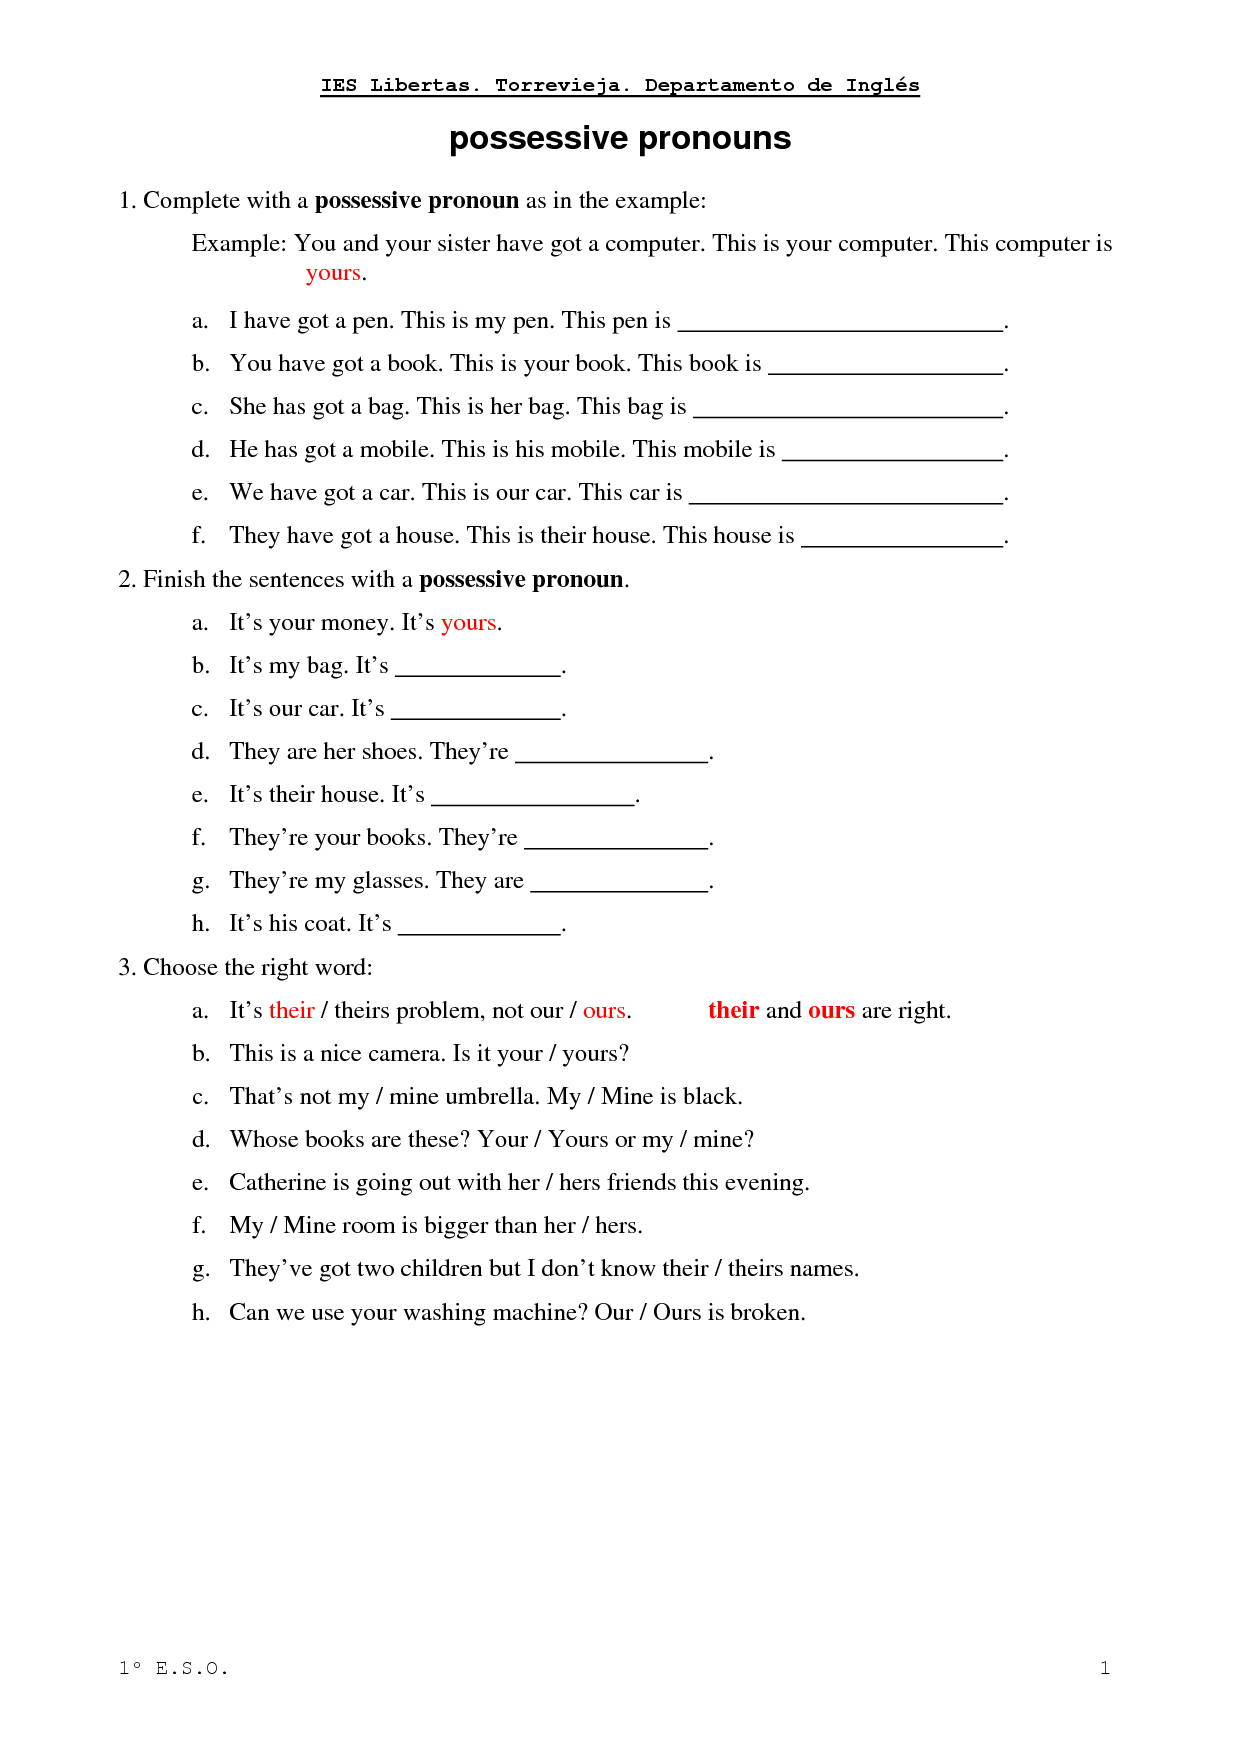 object-pronouns-and-possessiv-english-esl-worksheets-pdf-doc